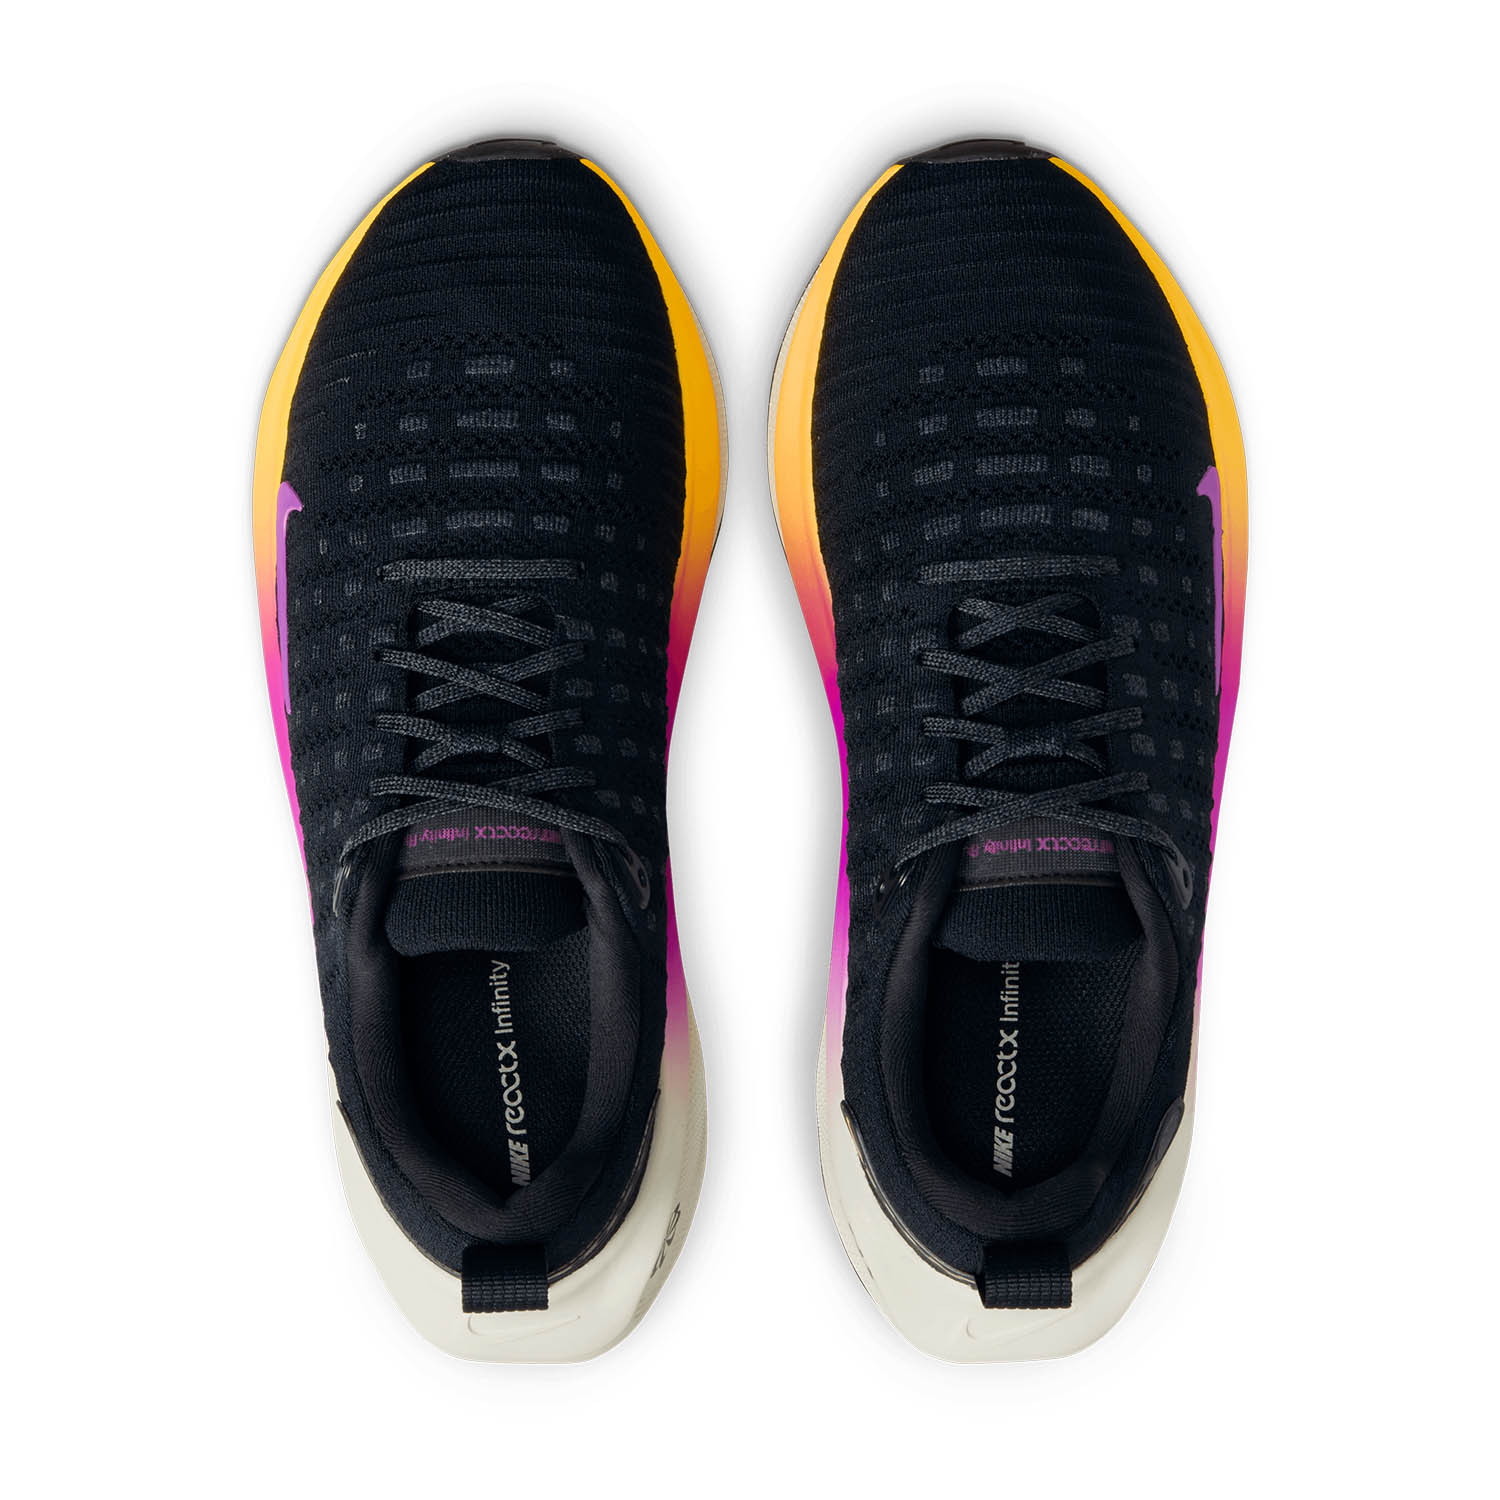 Nike InfinityRN 4 - Black/Hyper Violet/Anthracite